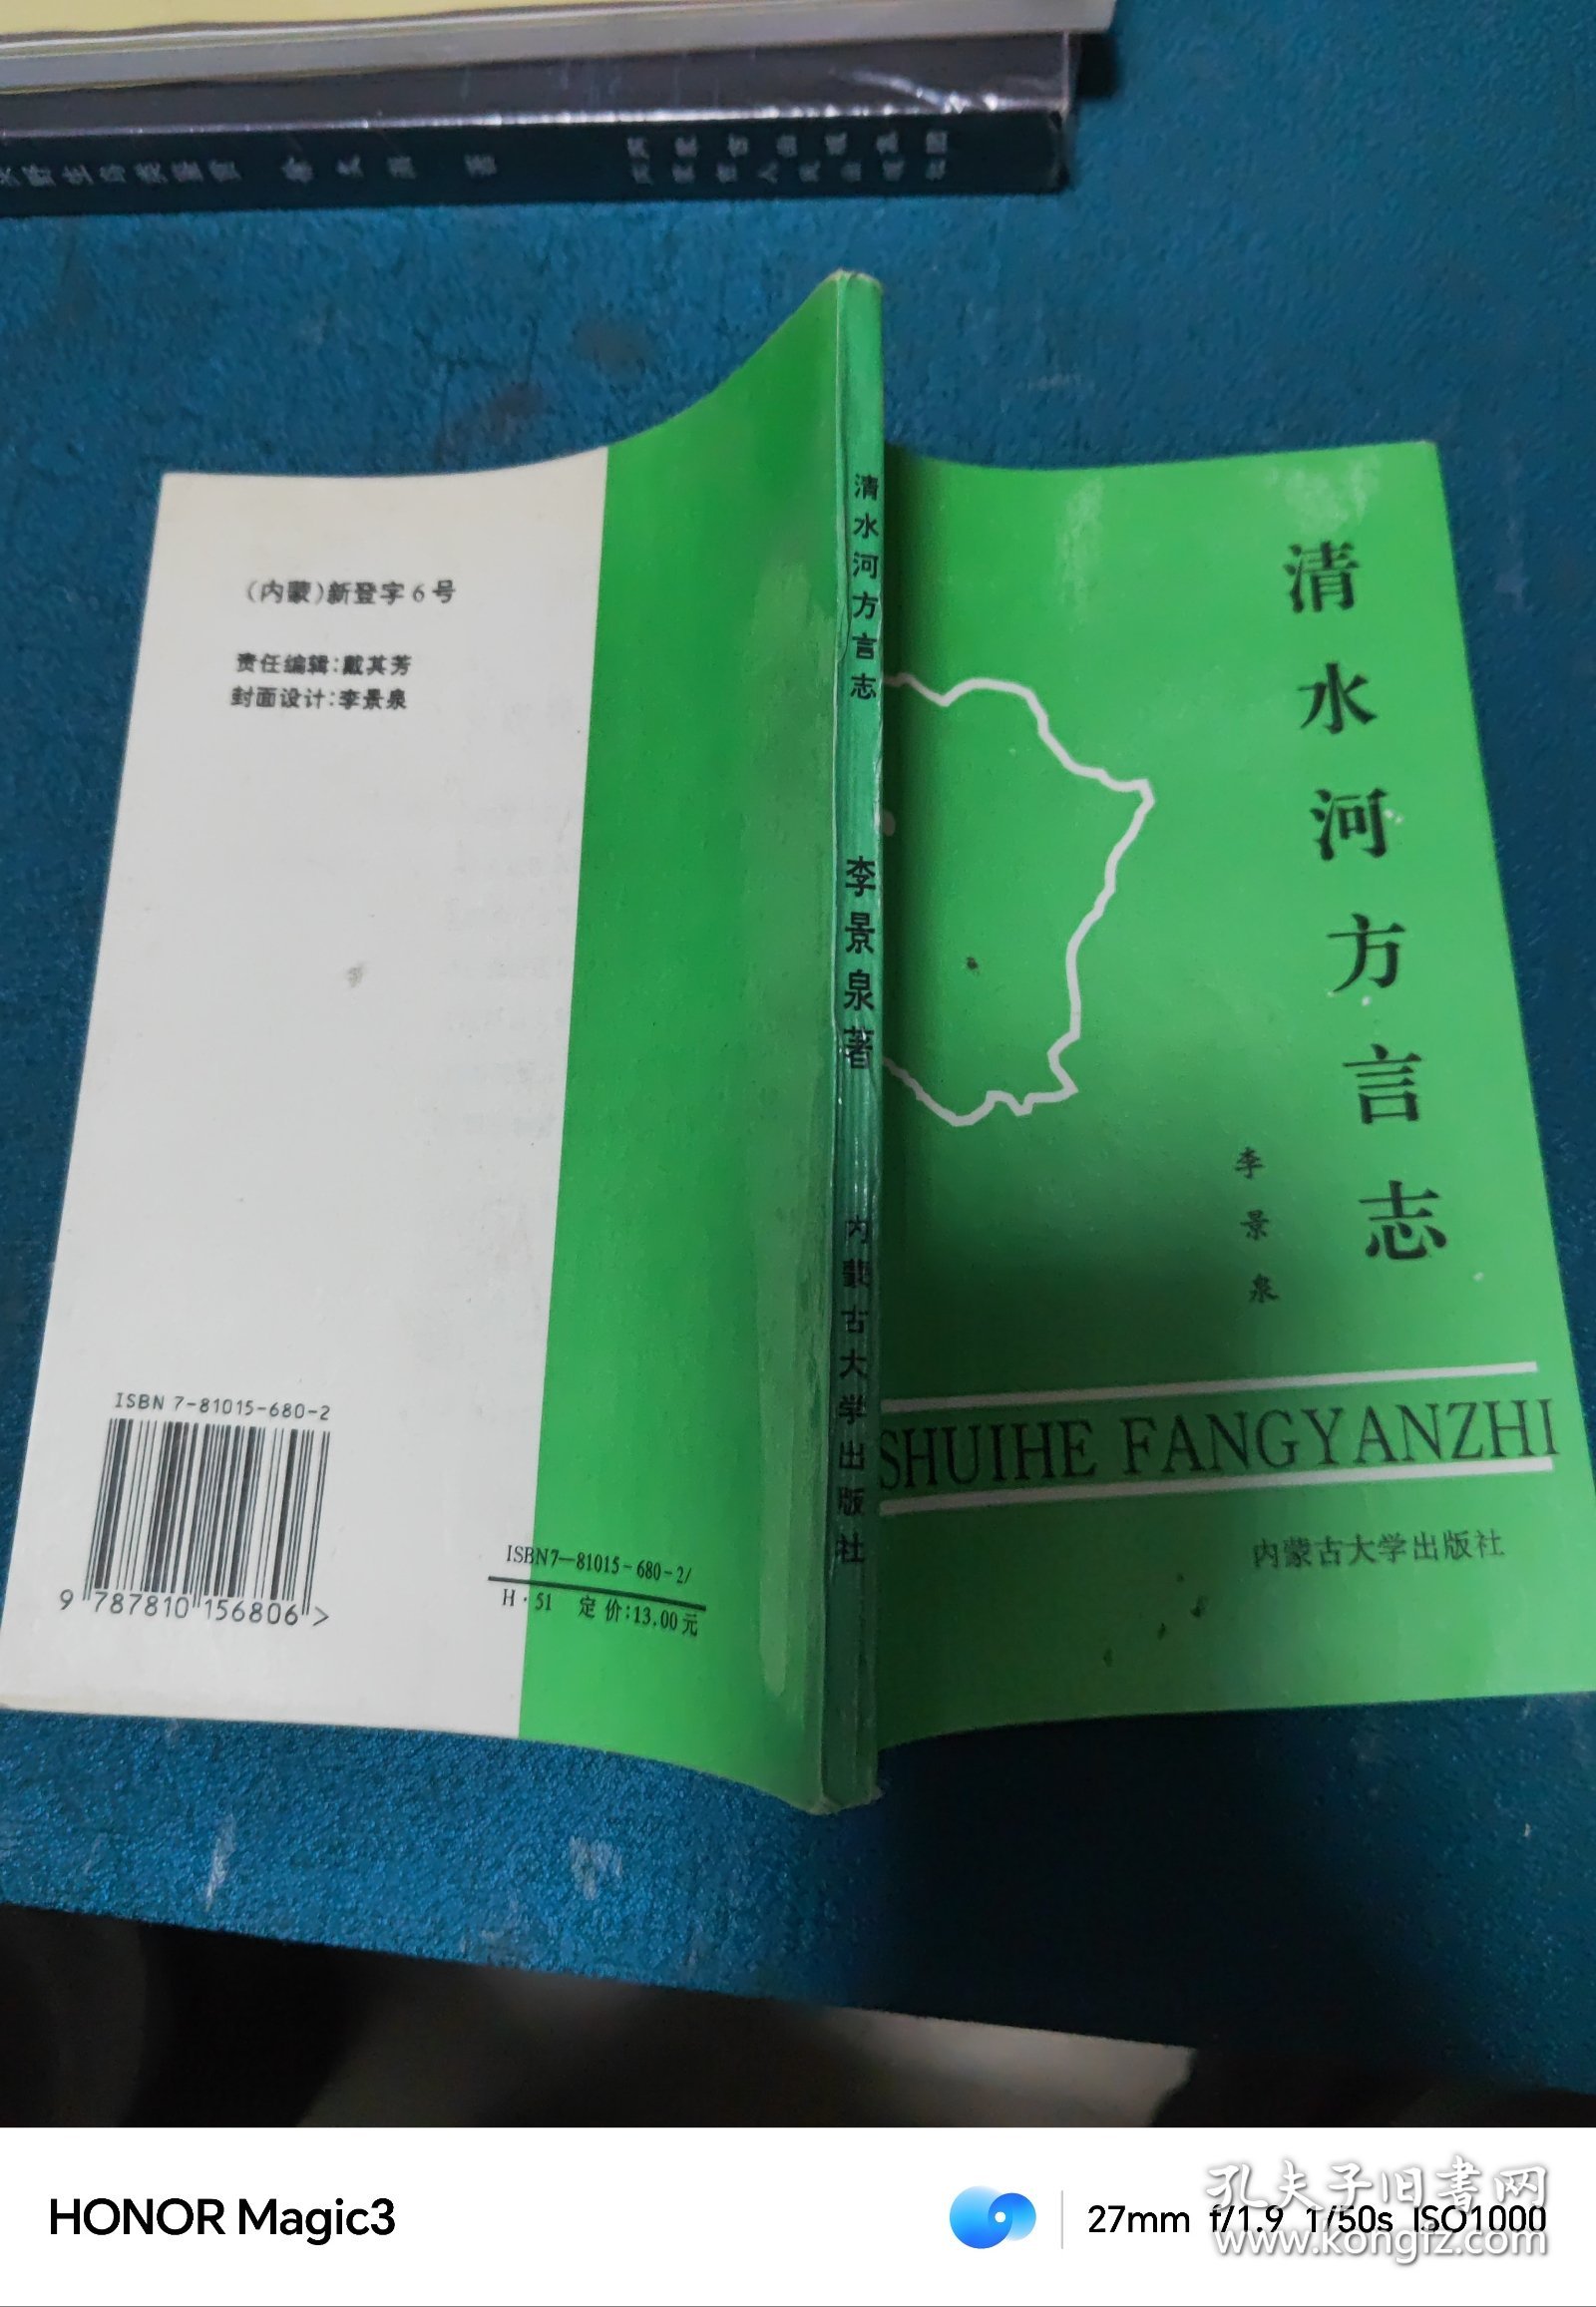 清水河方言志，一版一印 印量2000册